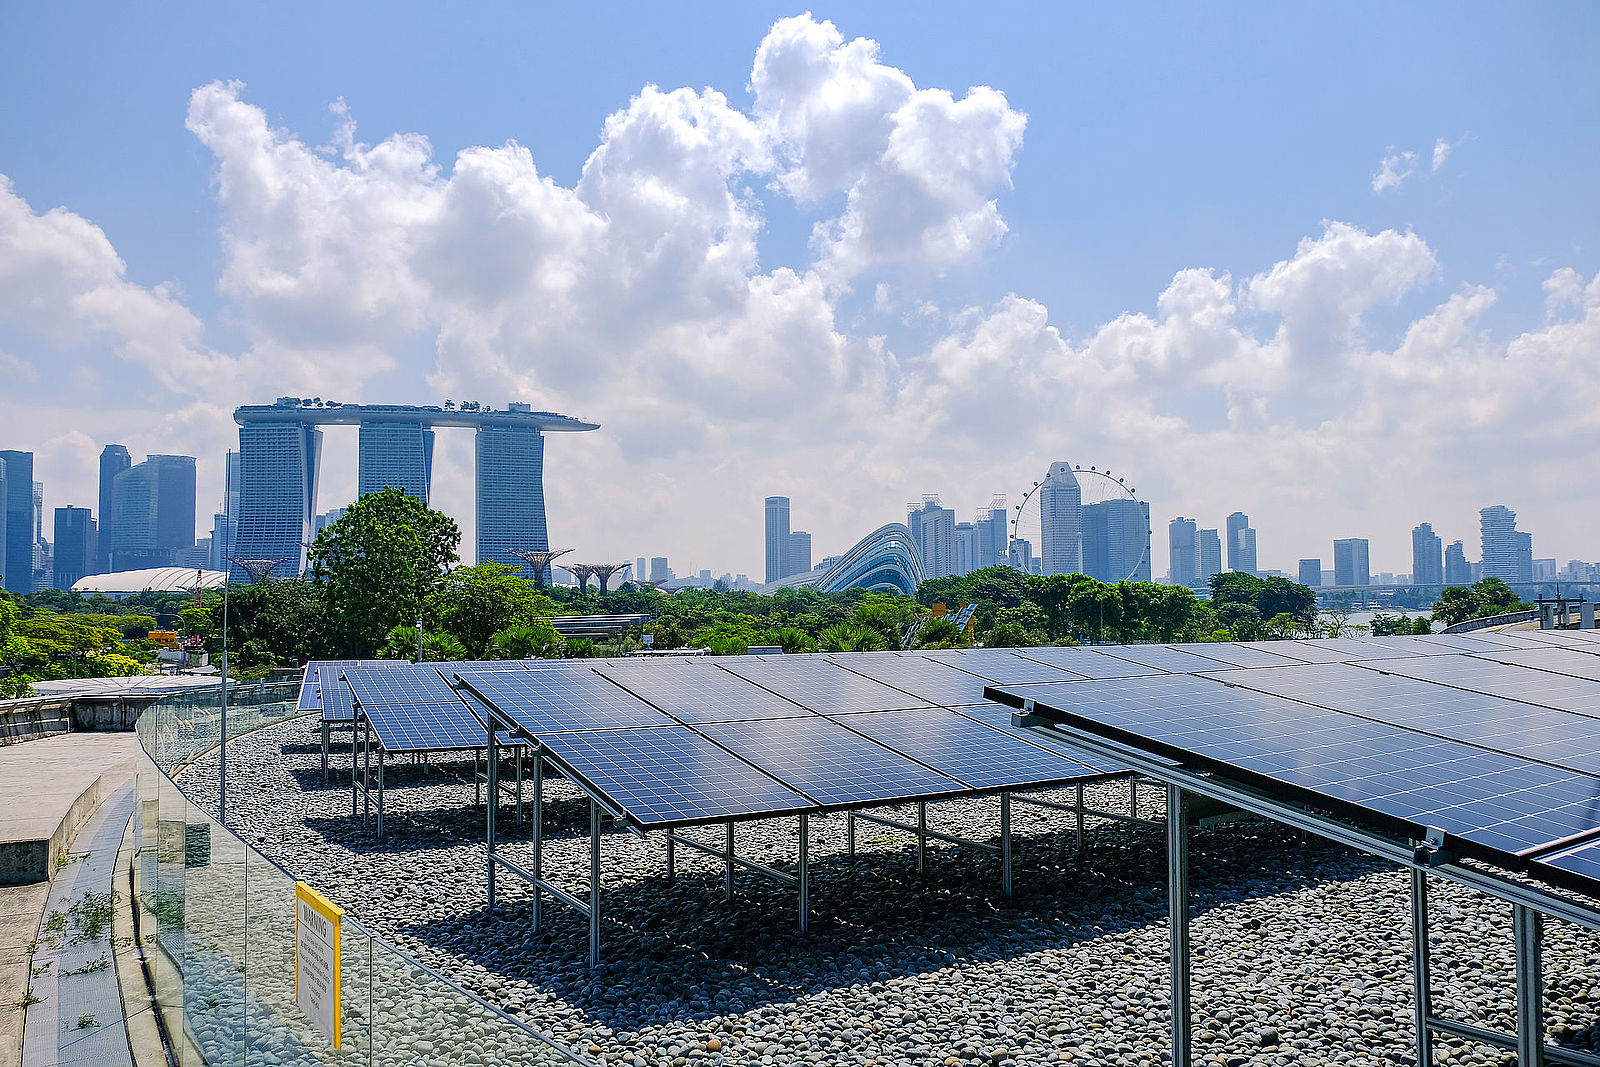 Singapur Smart City - Blick auf die Solarmodule